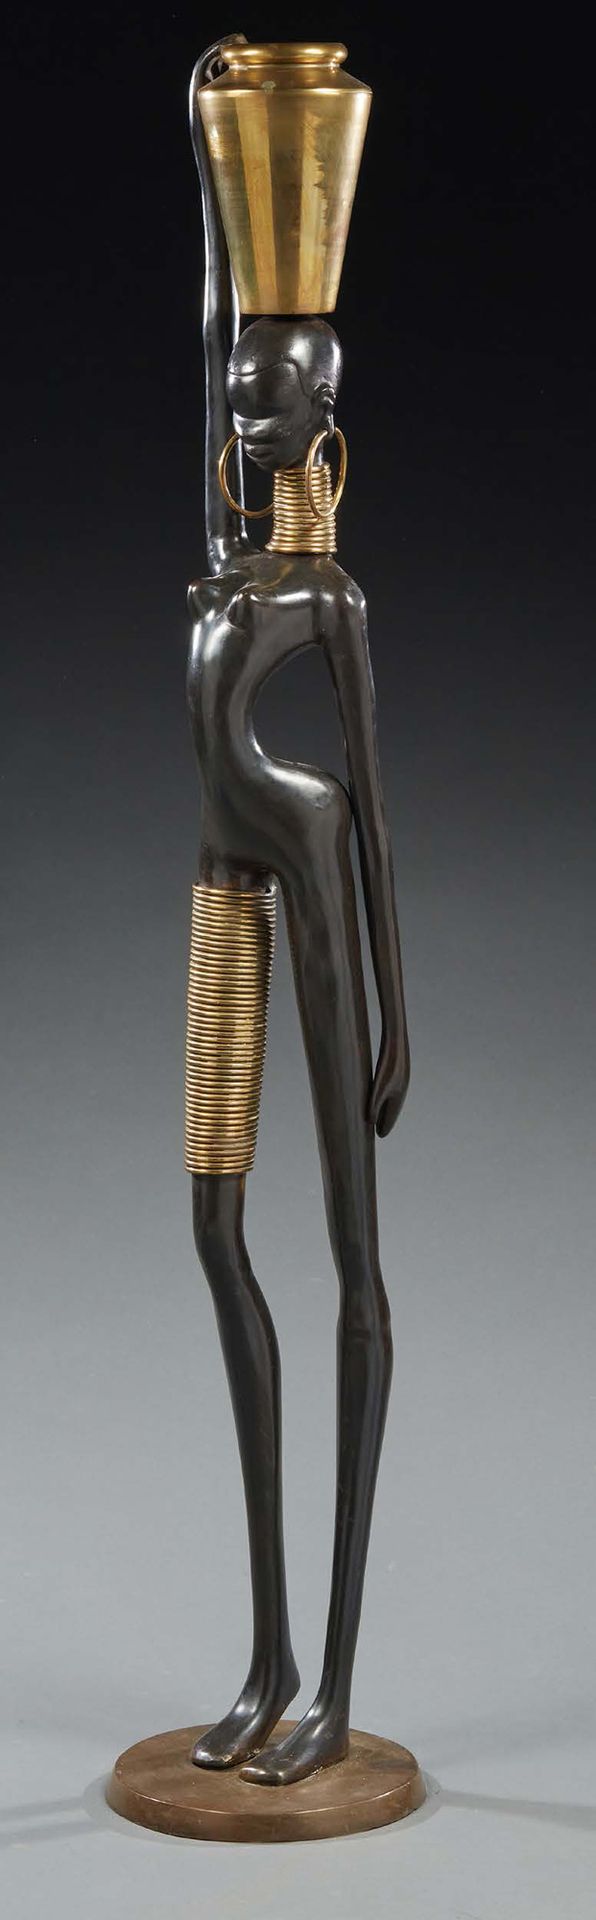 TRAVAIL 1970 Bronze sculpture of an African woman
H. 166 cm